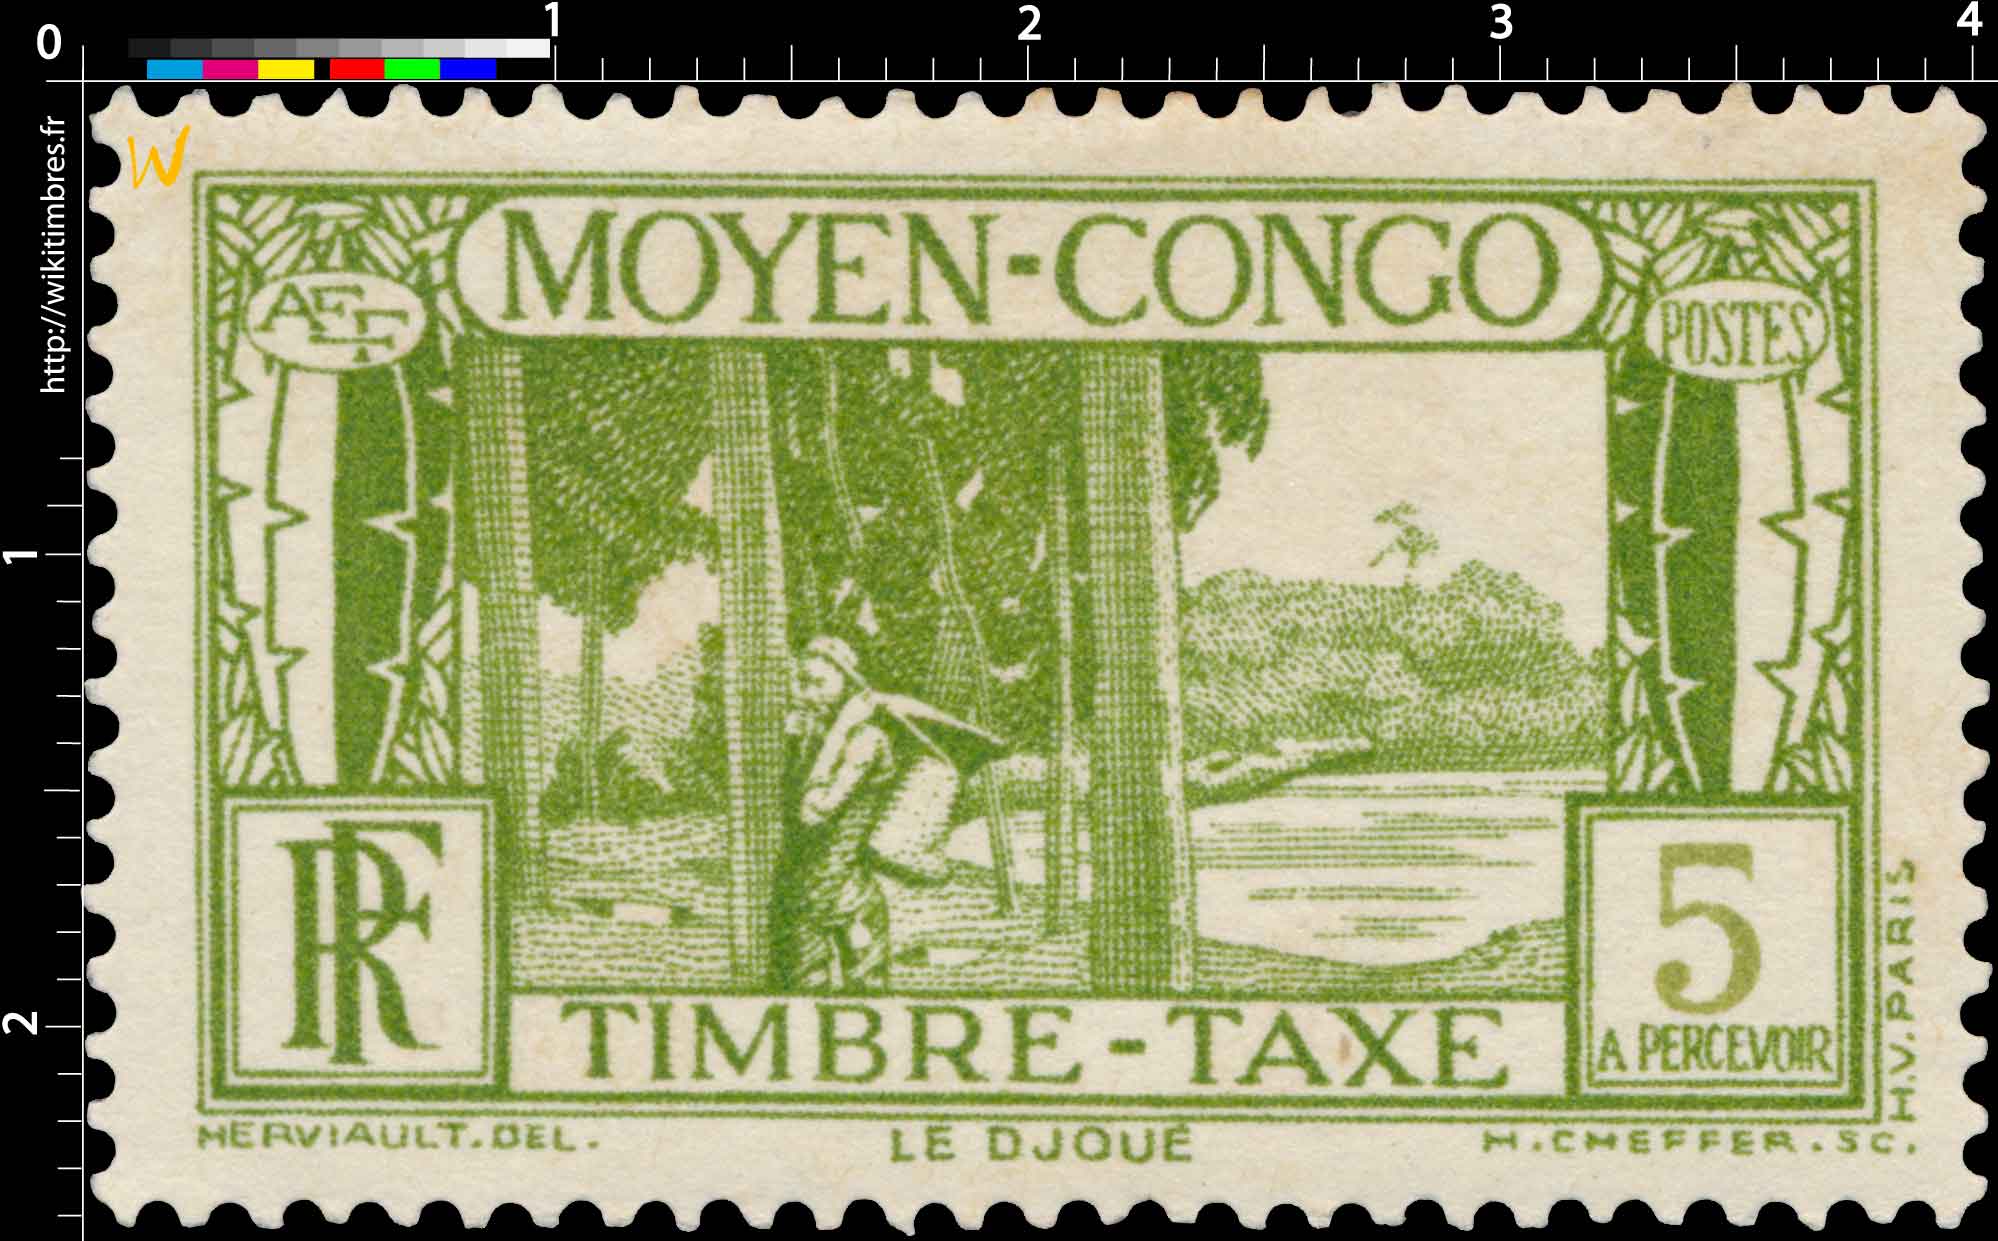 Congo - Le Djoudj